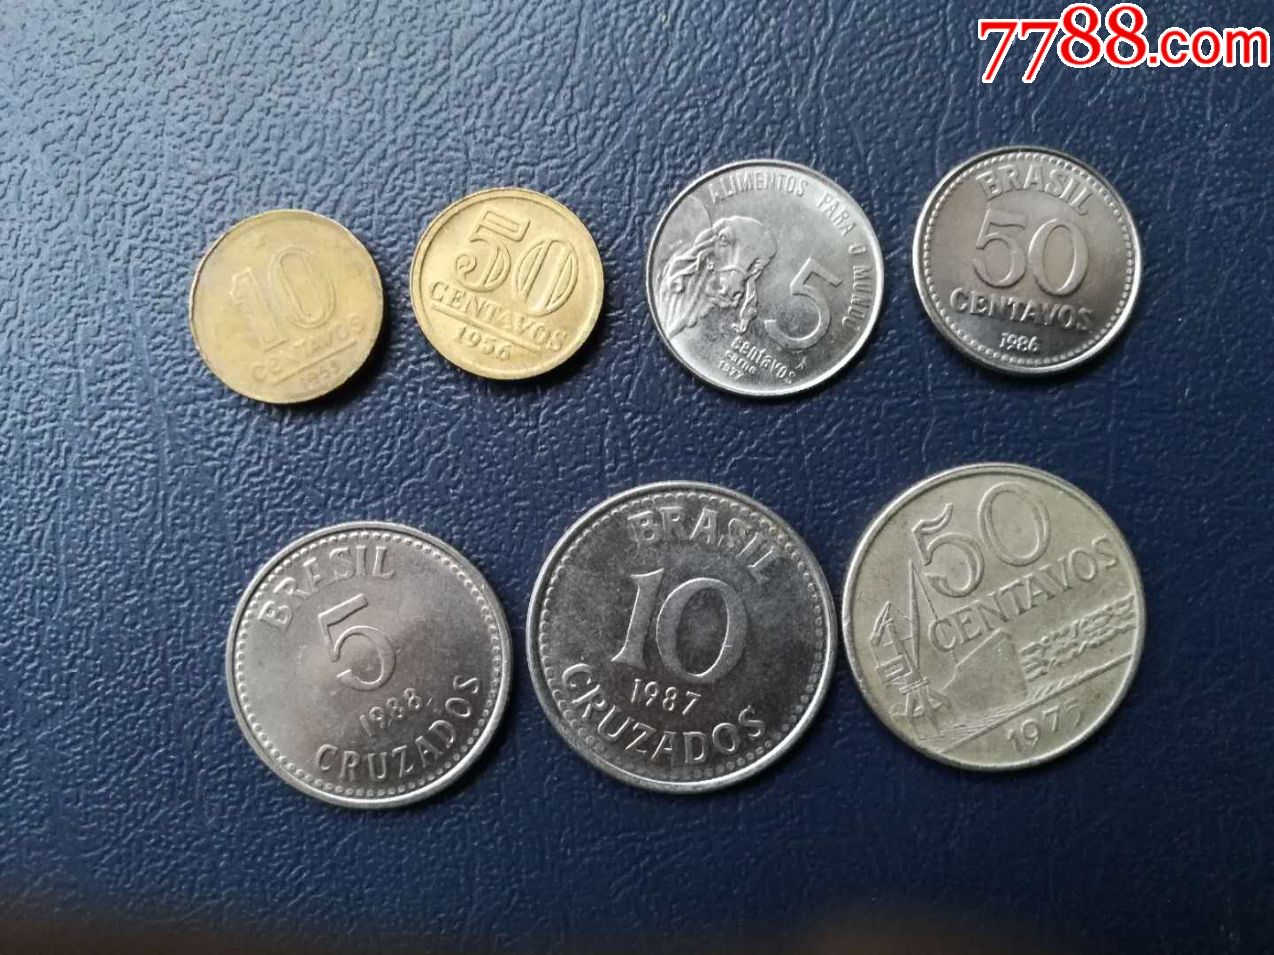 巴西货币 图库摄影 - 图片: 18059432